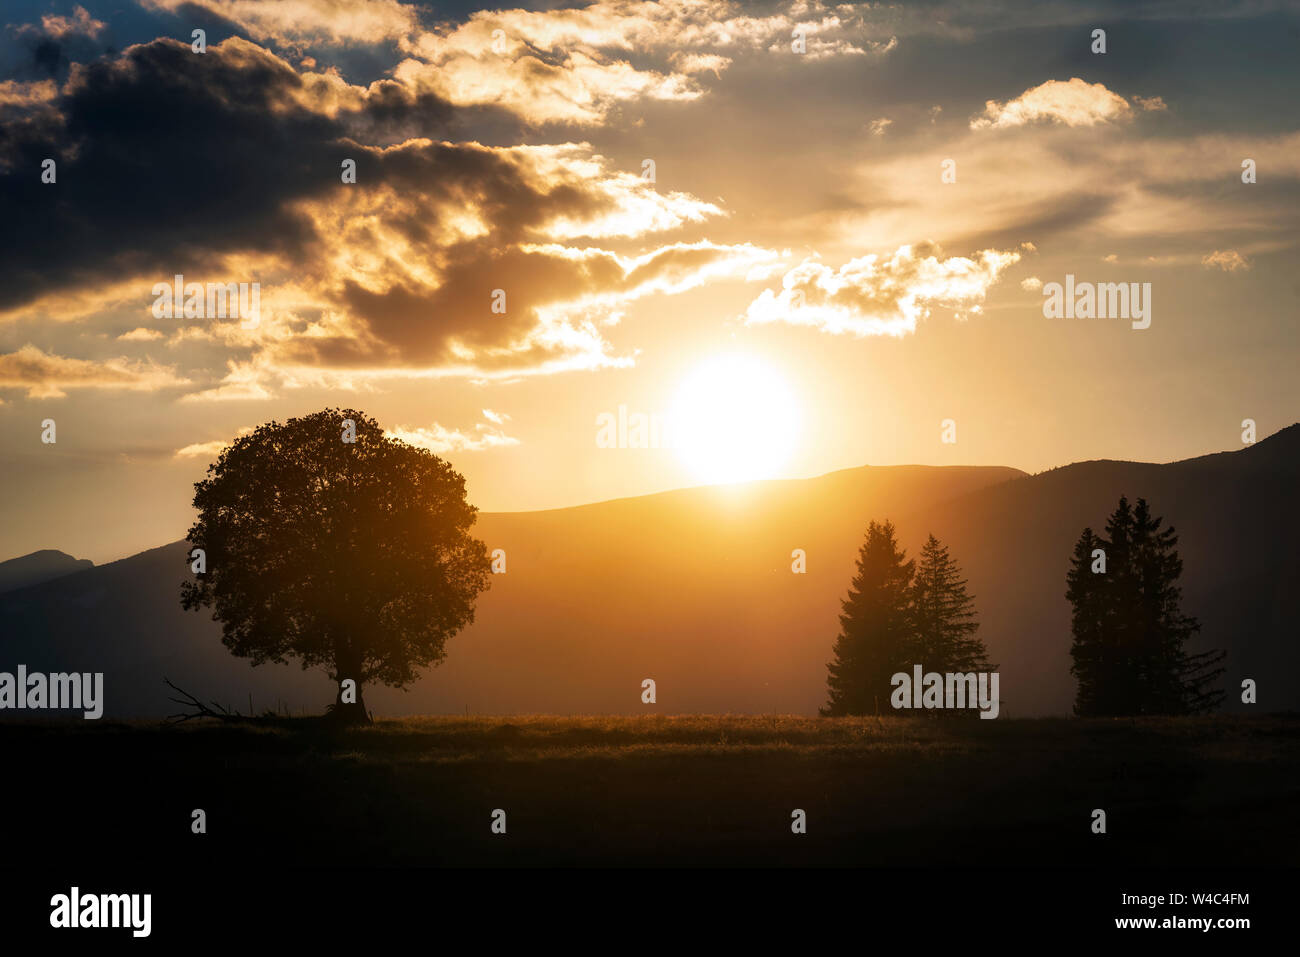 Ländliche Landschaft mit einem Hügel und ein einzelner Baum im Golden Sunset mit warmem Licht Stockfoto